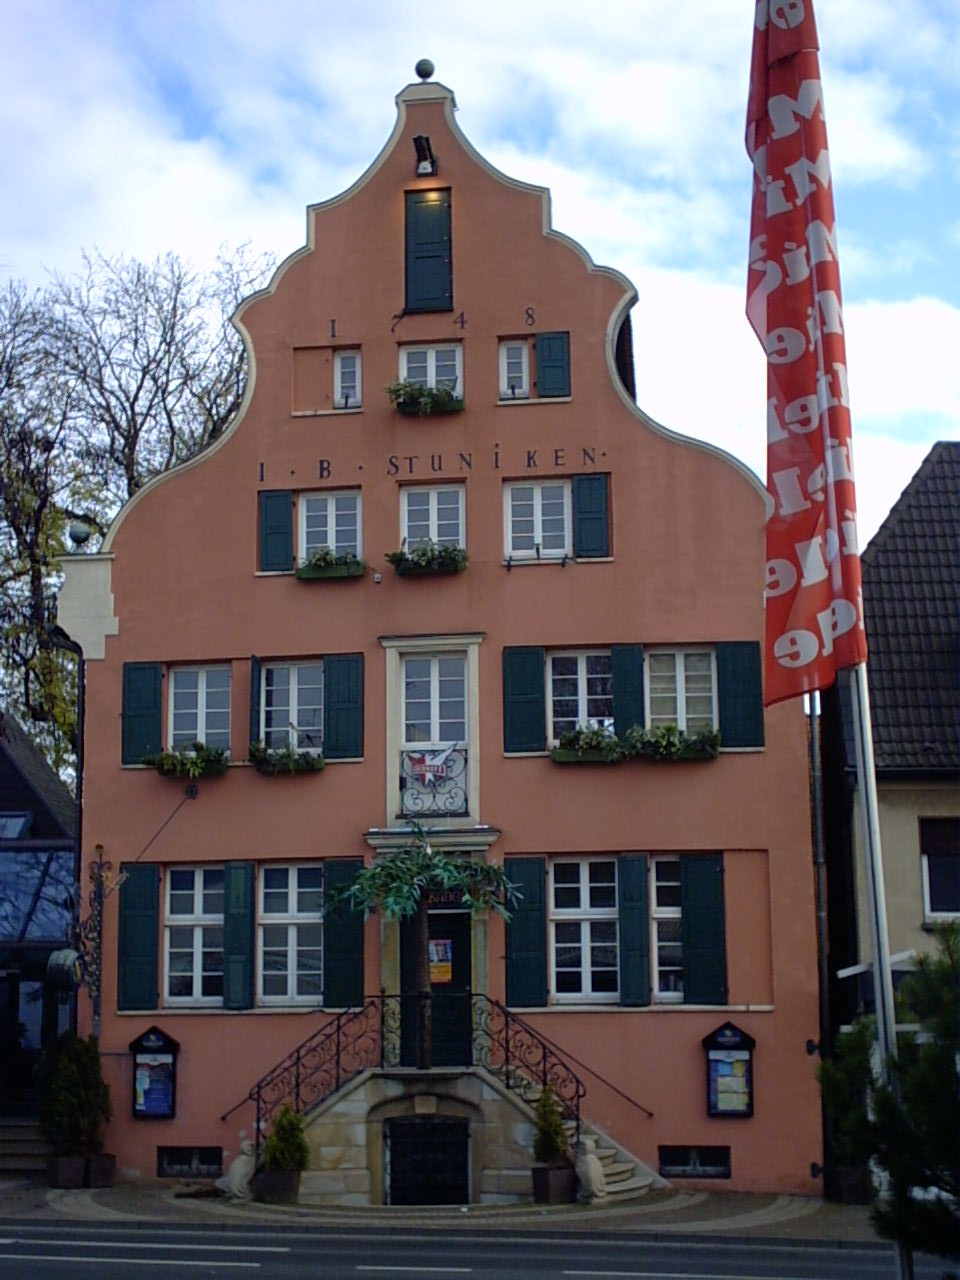 Stunikenhaus in Hamm: Der Brandmeister Stuniken ist Namensgeber für das Haus und den Stunikenmarkt (Quelle: Wikipedia, gemeinfrei)